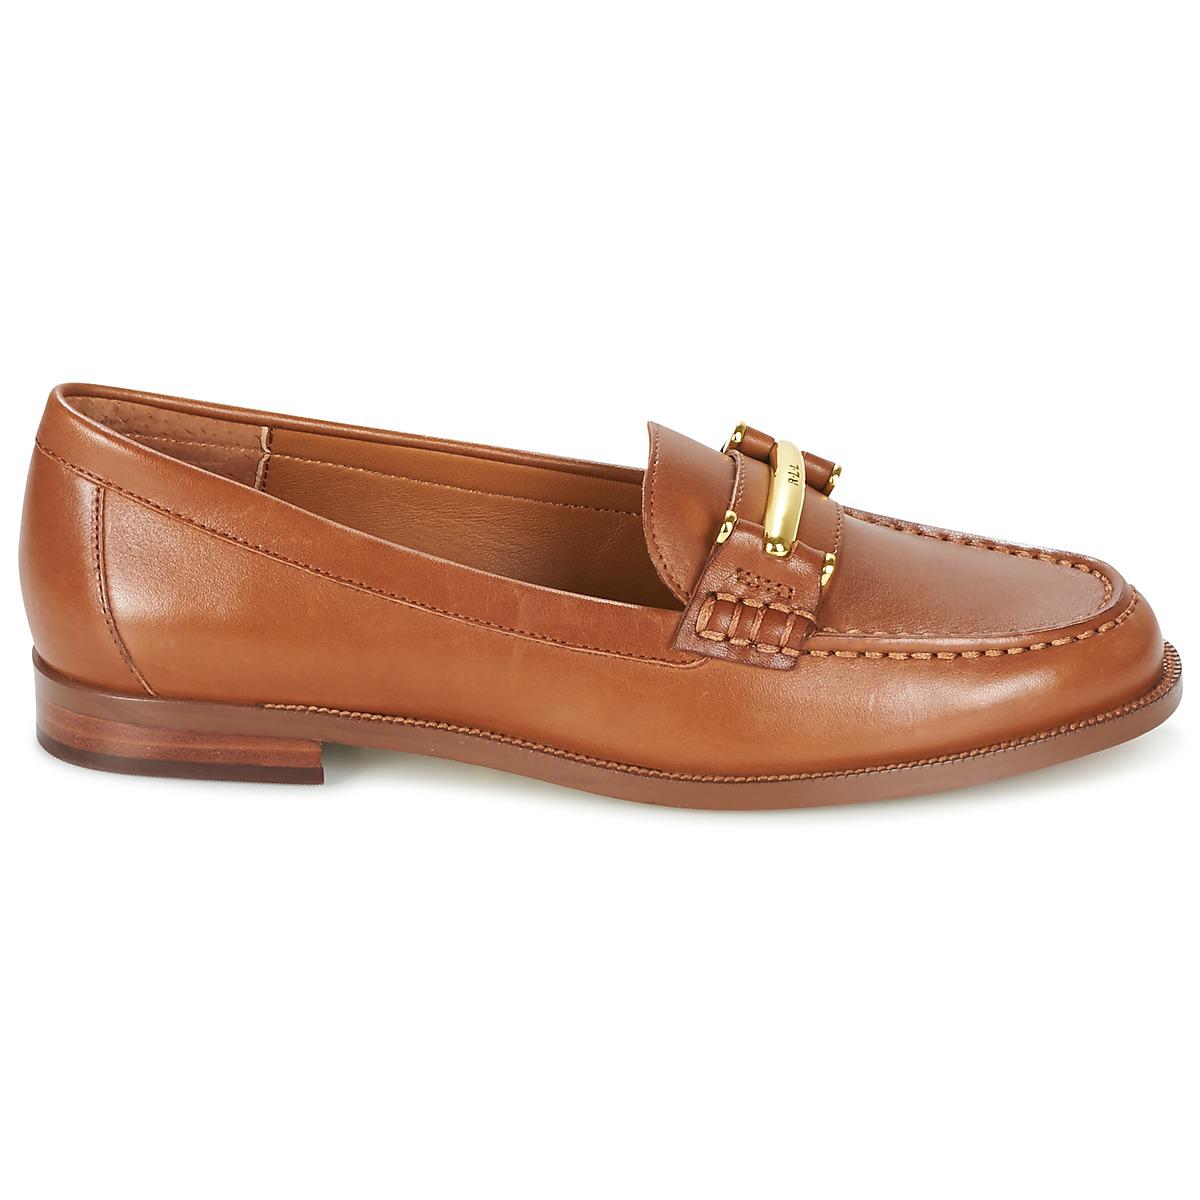 Lauren by Ralph Lauren Flynn Women's Loafers / Casual Shoes In Brown - Lyst